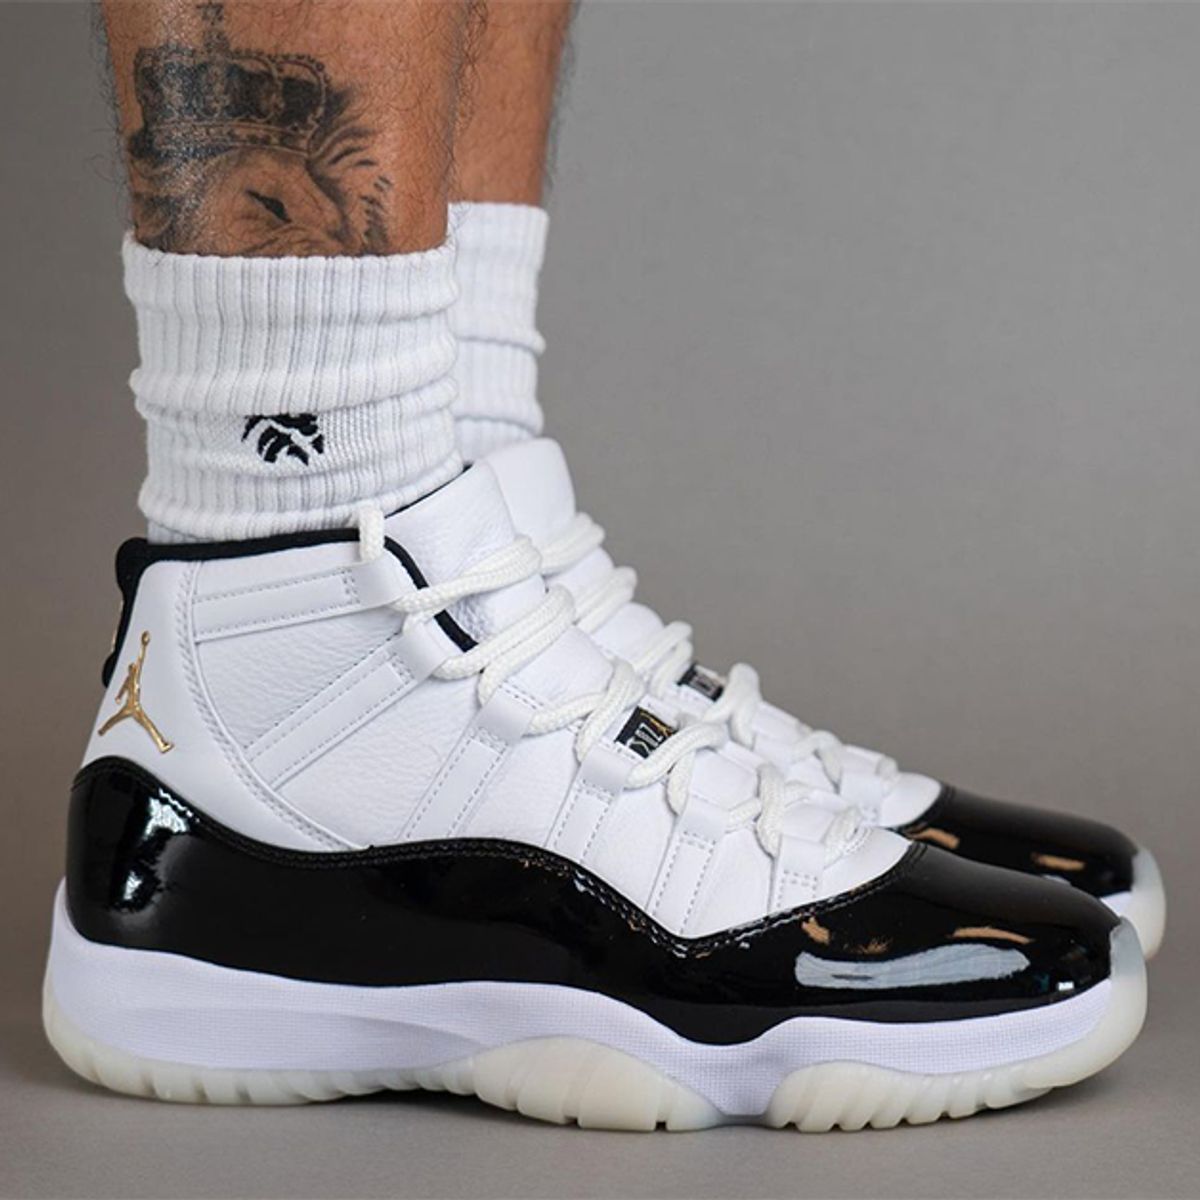 This adidas Jordan Line Reimagines Michael Jordan's Sneaker Legacy